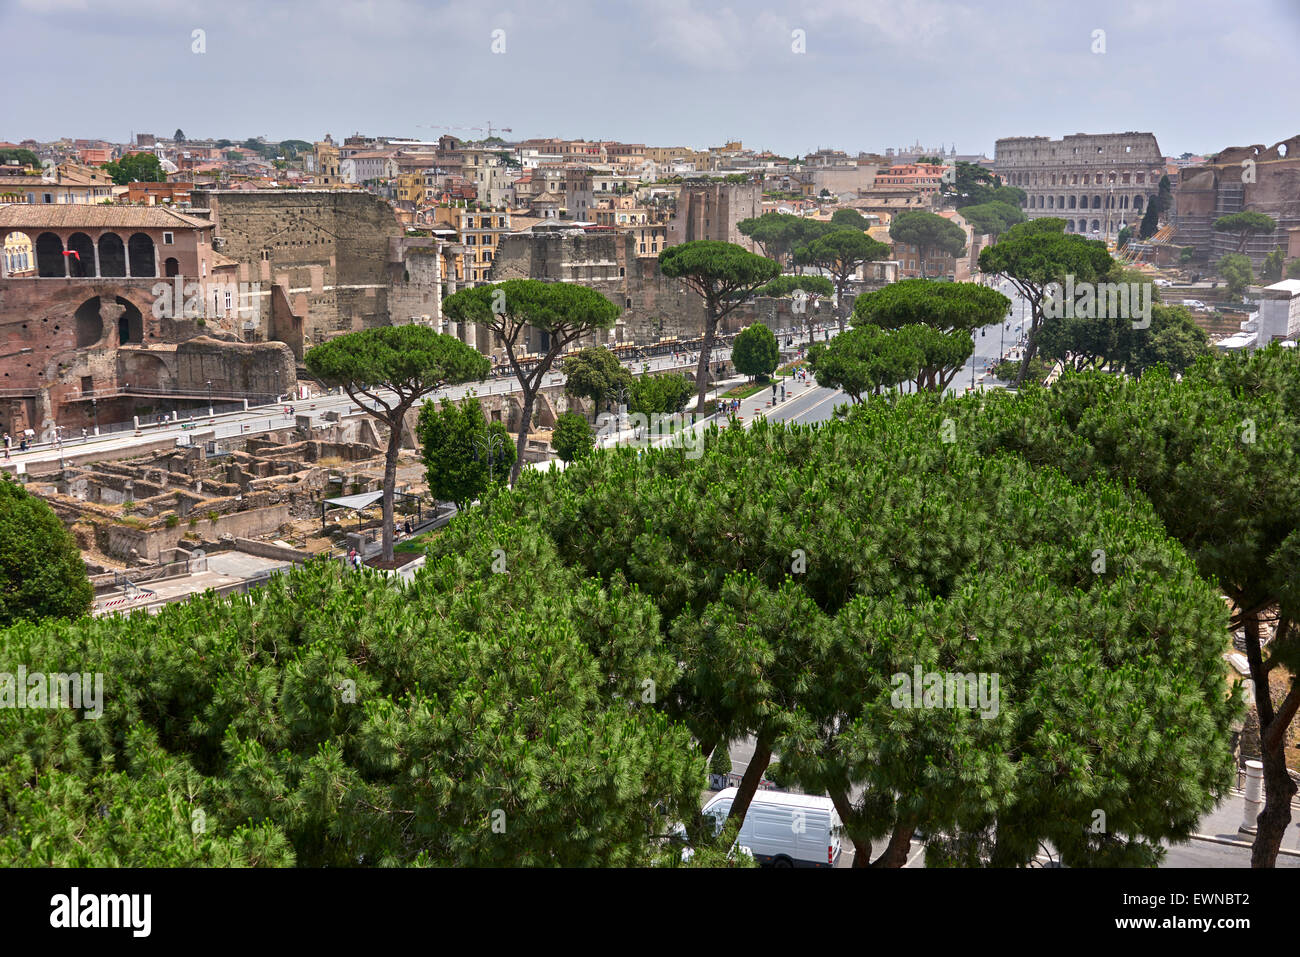 Le Forum Romain est un forum rectangulaire au centre de la ville de Rome Banque D'Images